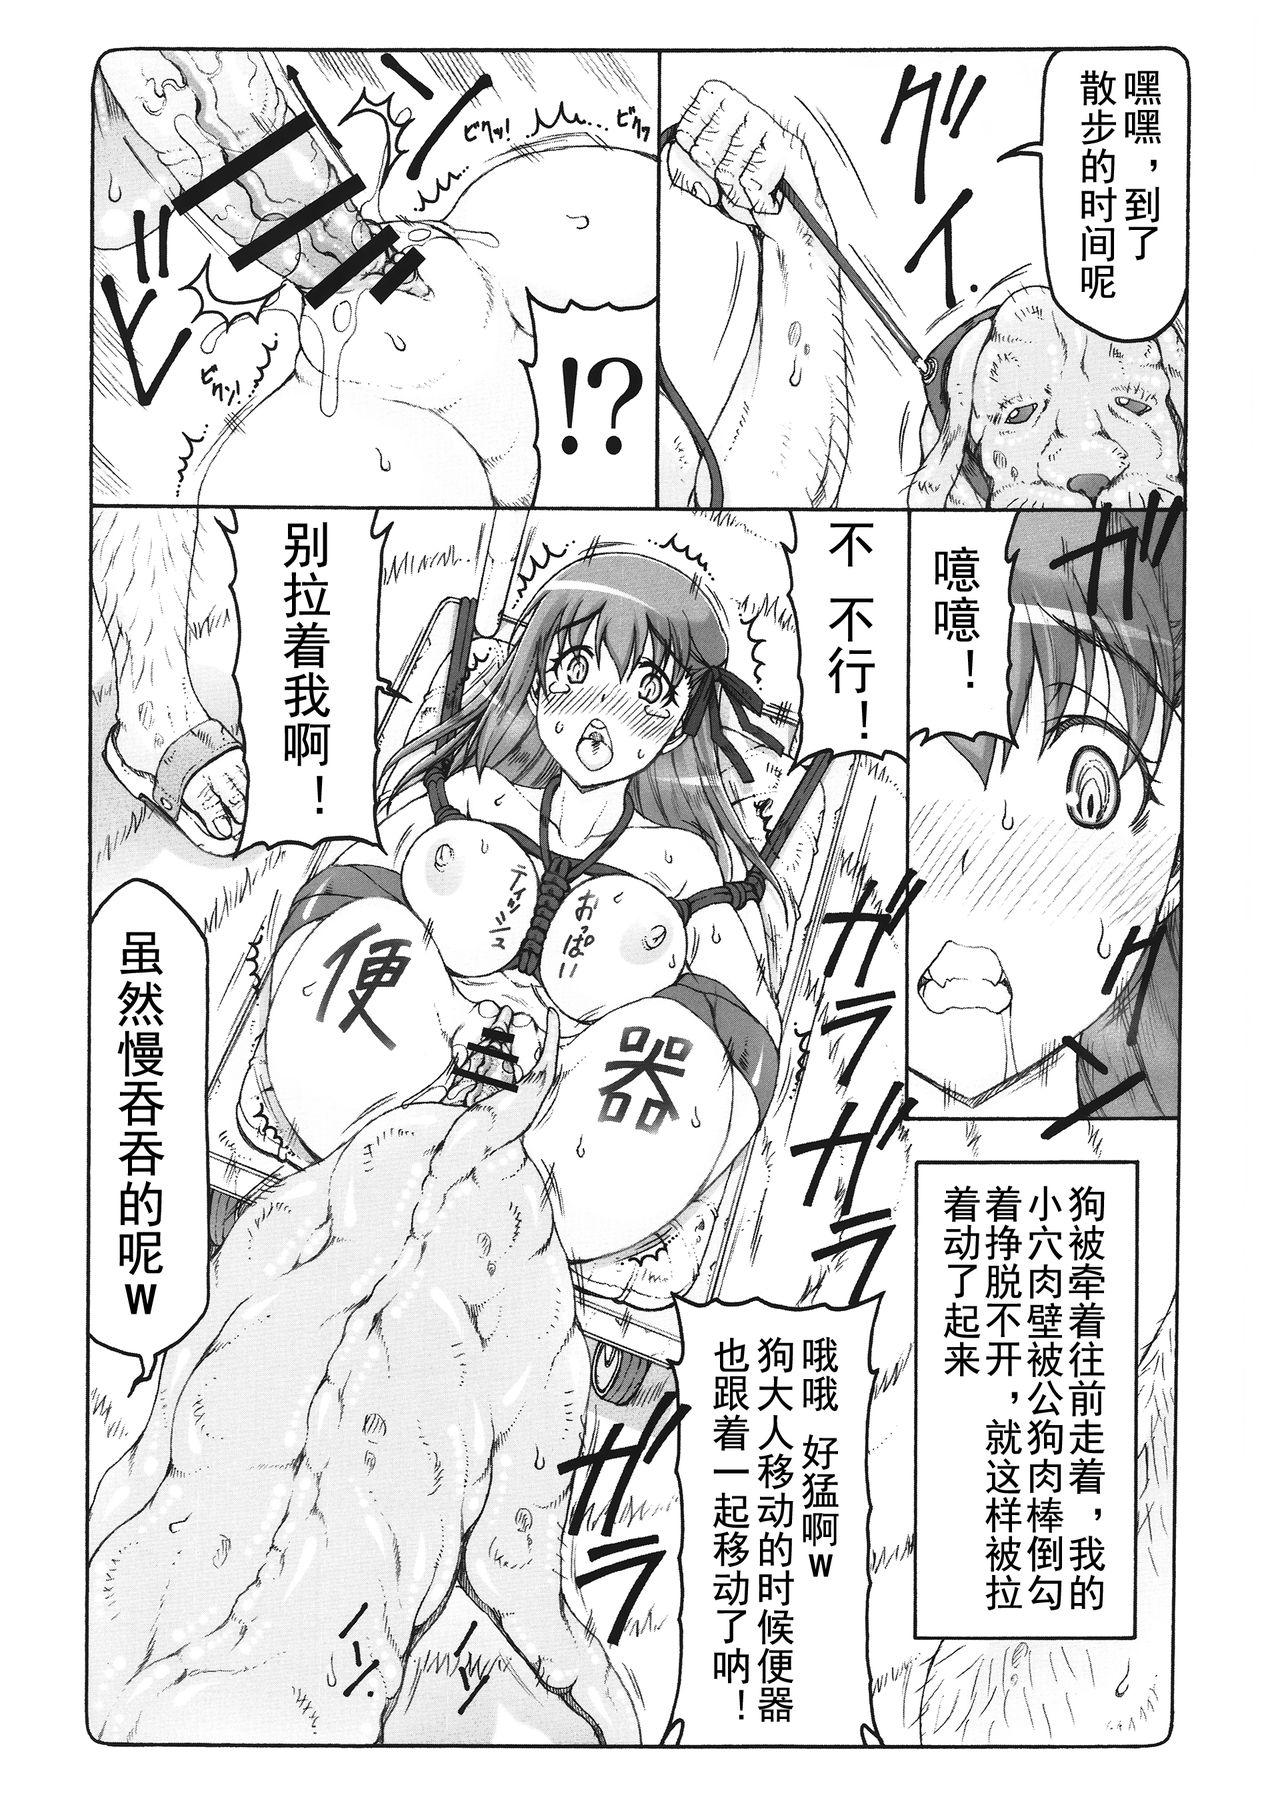 Machine Kotori 14 - Fate stay night Web - Page 8